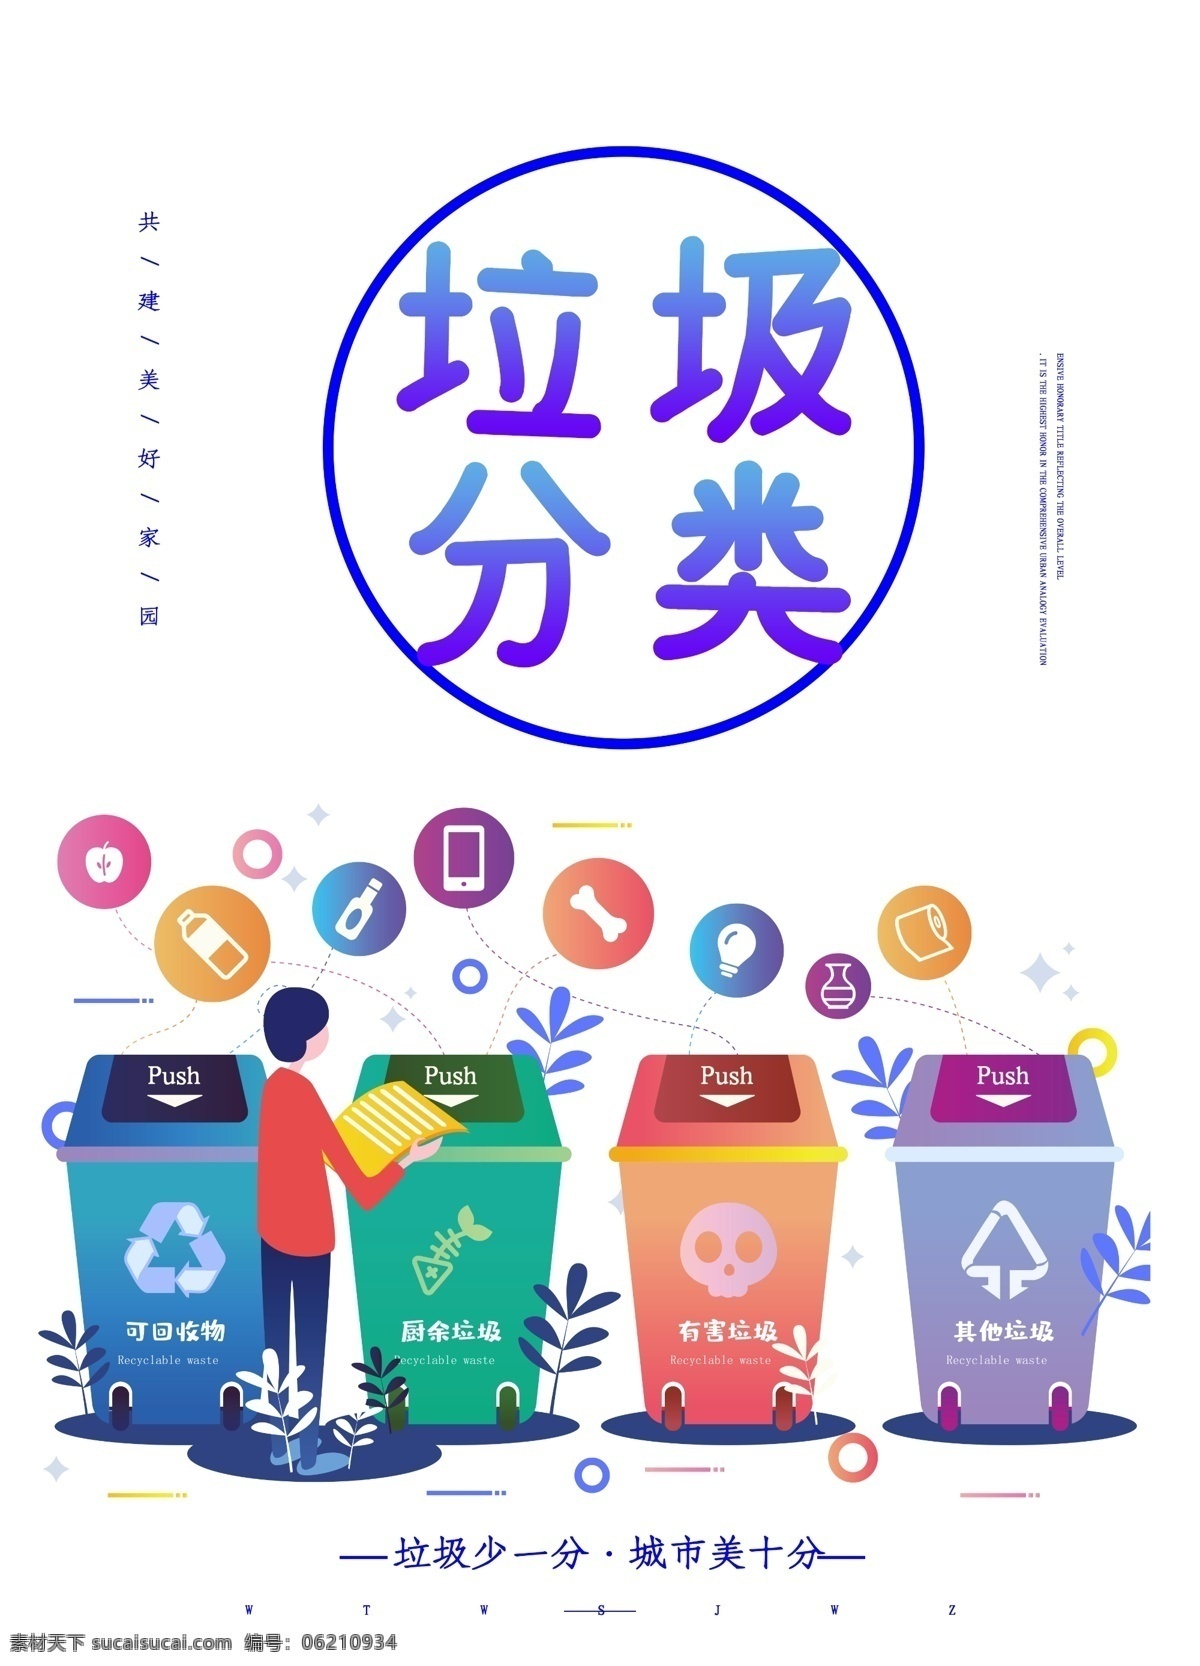 垃圾分类 垃圾 分类 环保 地球 绿色 公益 环境 保洁 健康 垃圾桶 卡通 分层